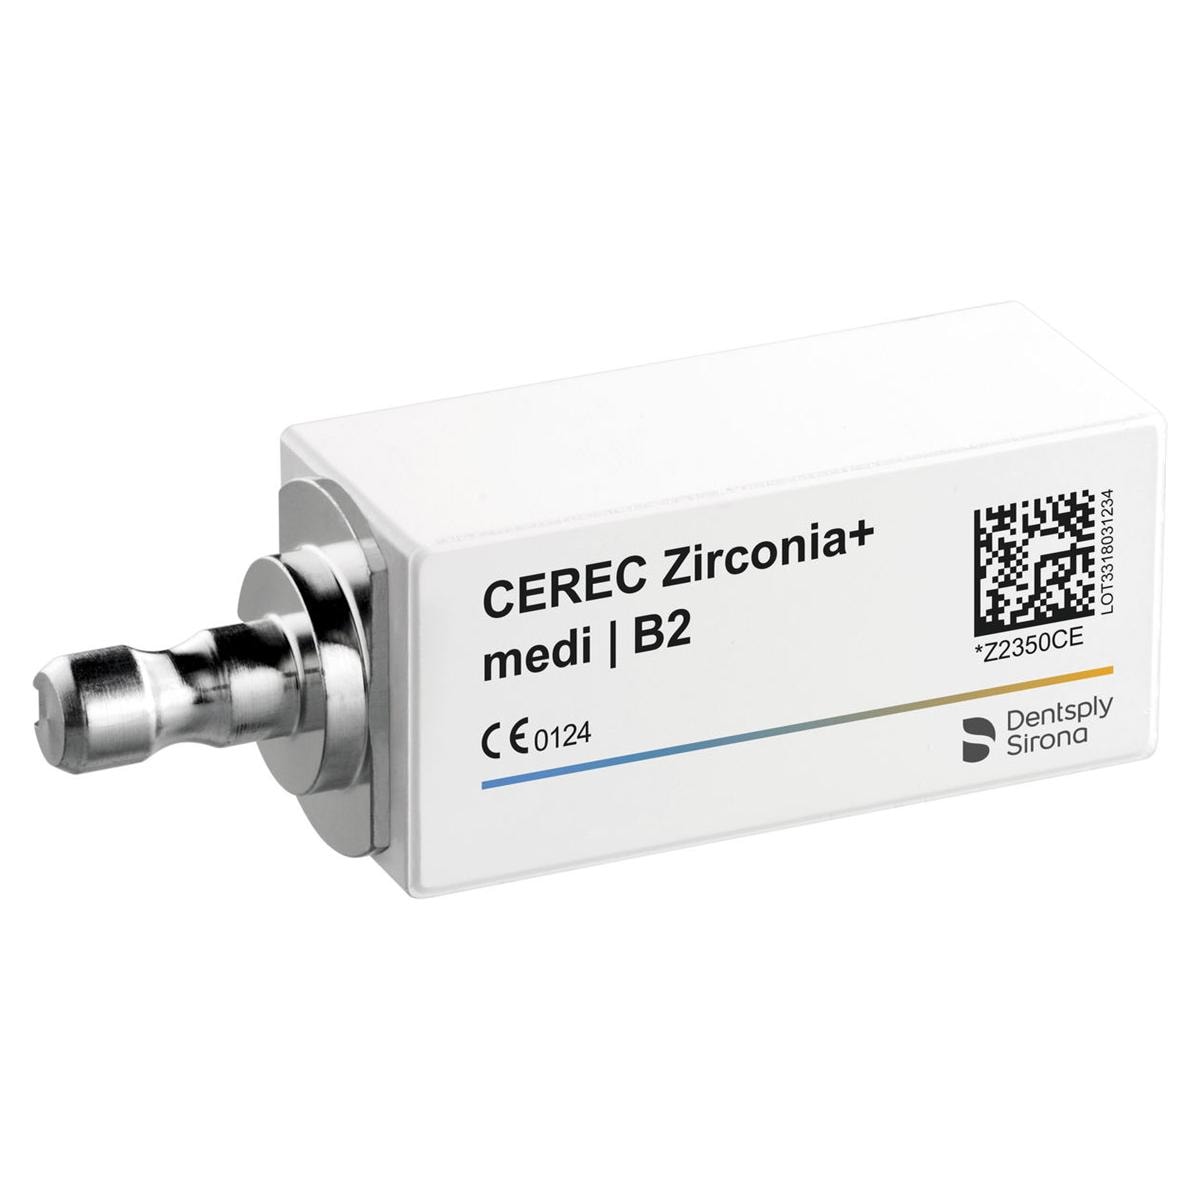 CEREC Zirconia+ medi - B2, 3 pcs